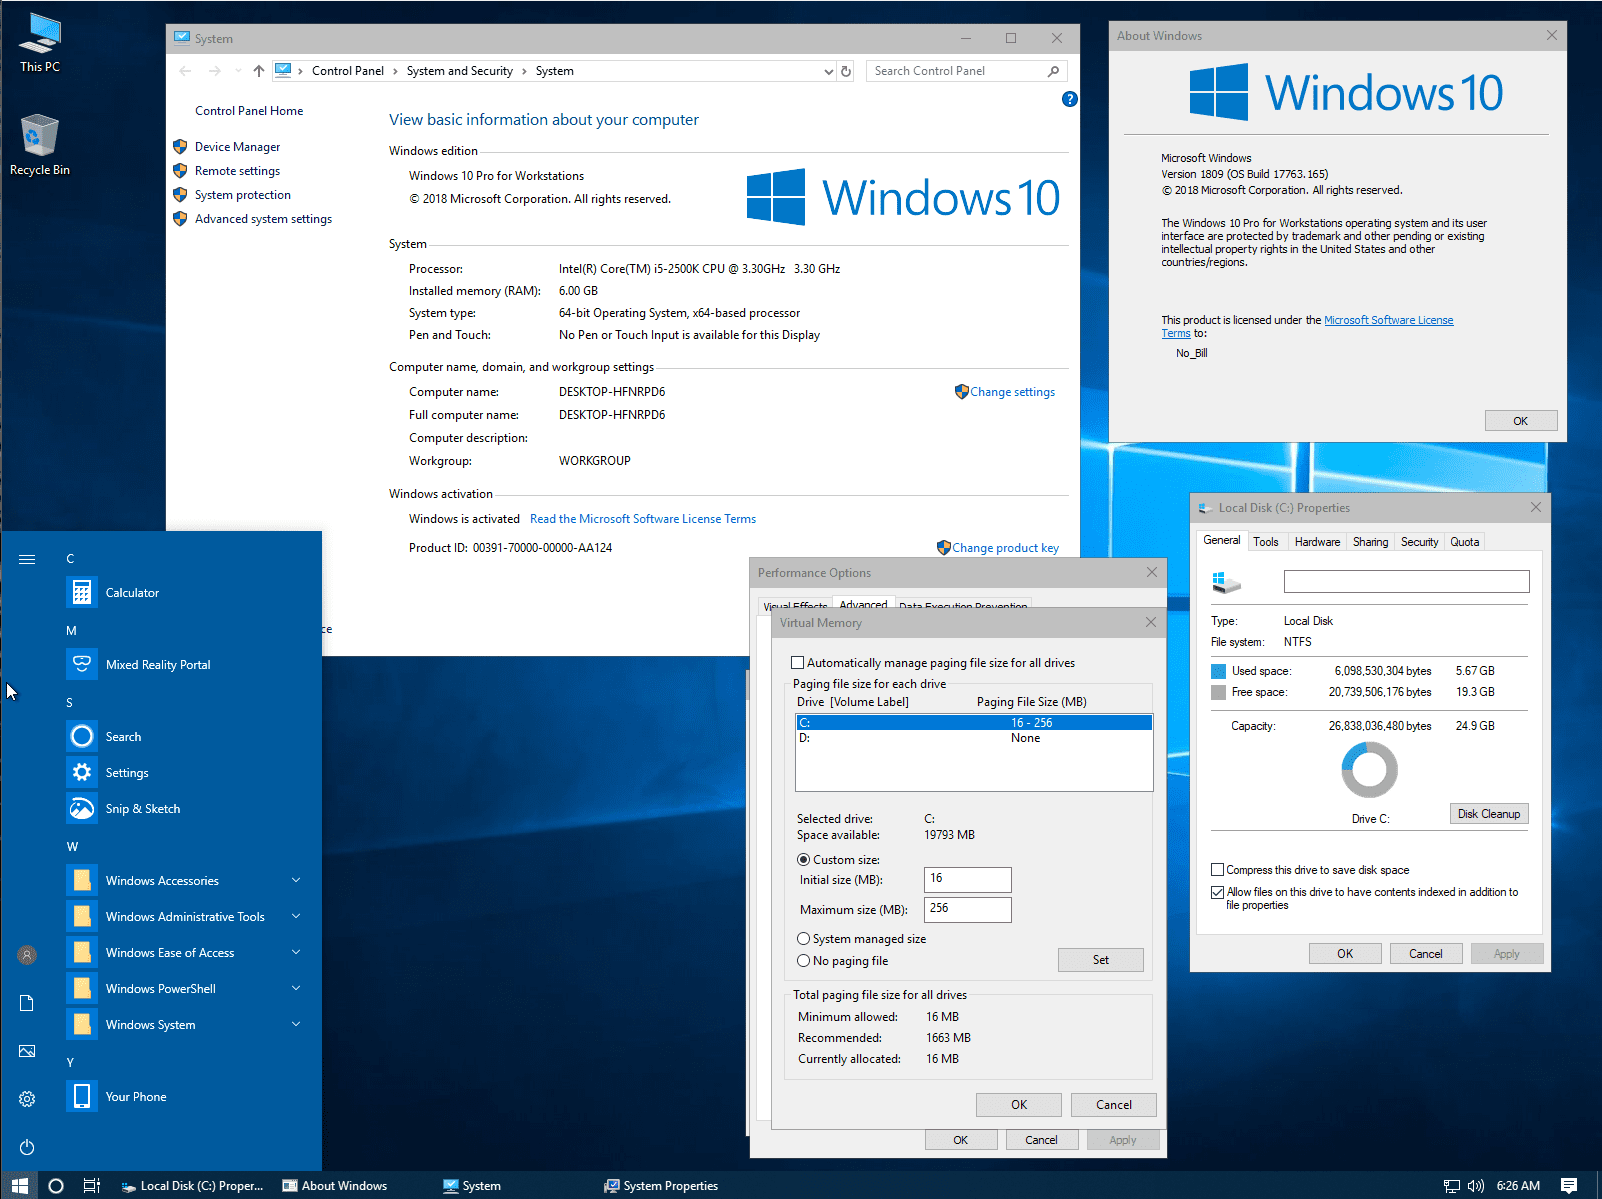 windows 10 pro workstation product key free